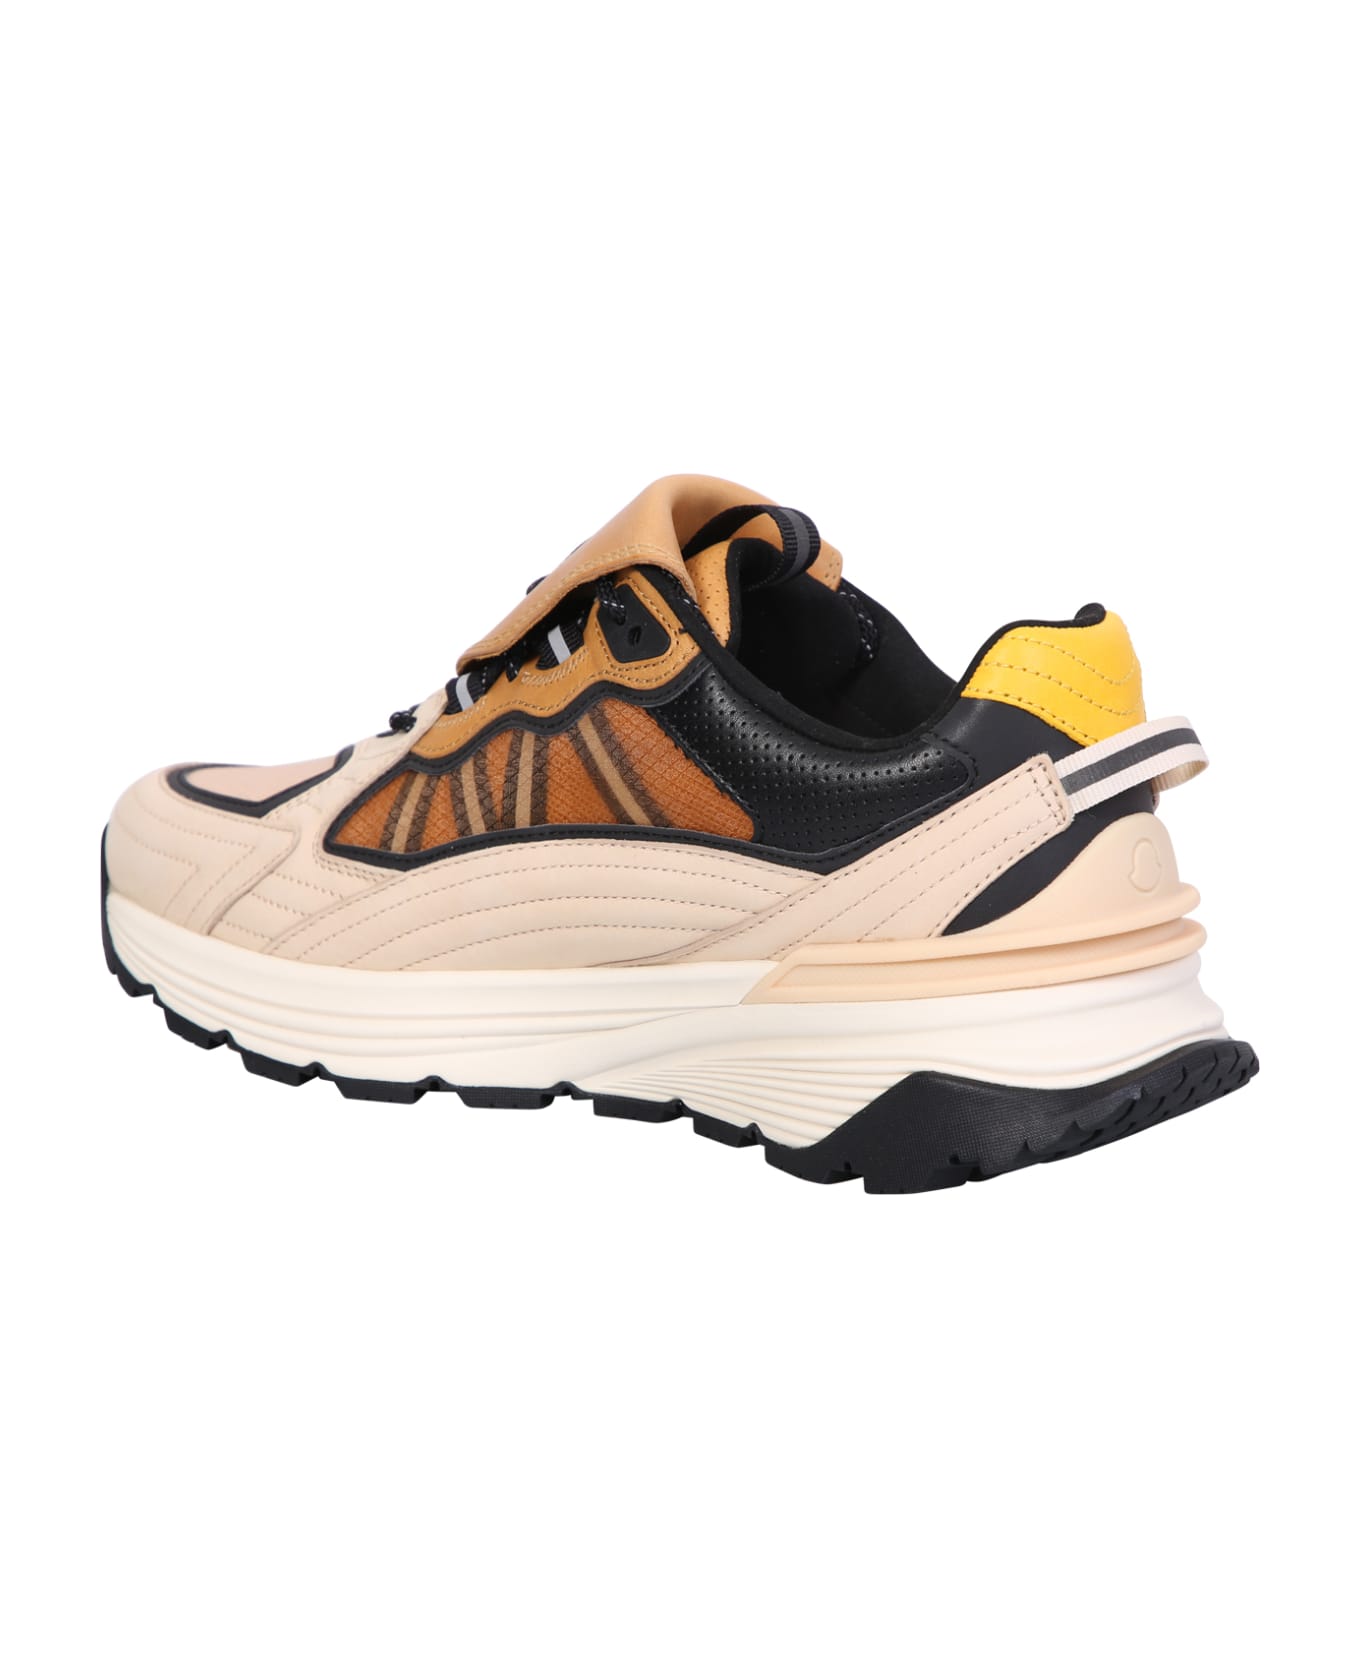 Moncler Genius Palm Lite Runner Sneakers - Beige